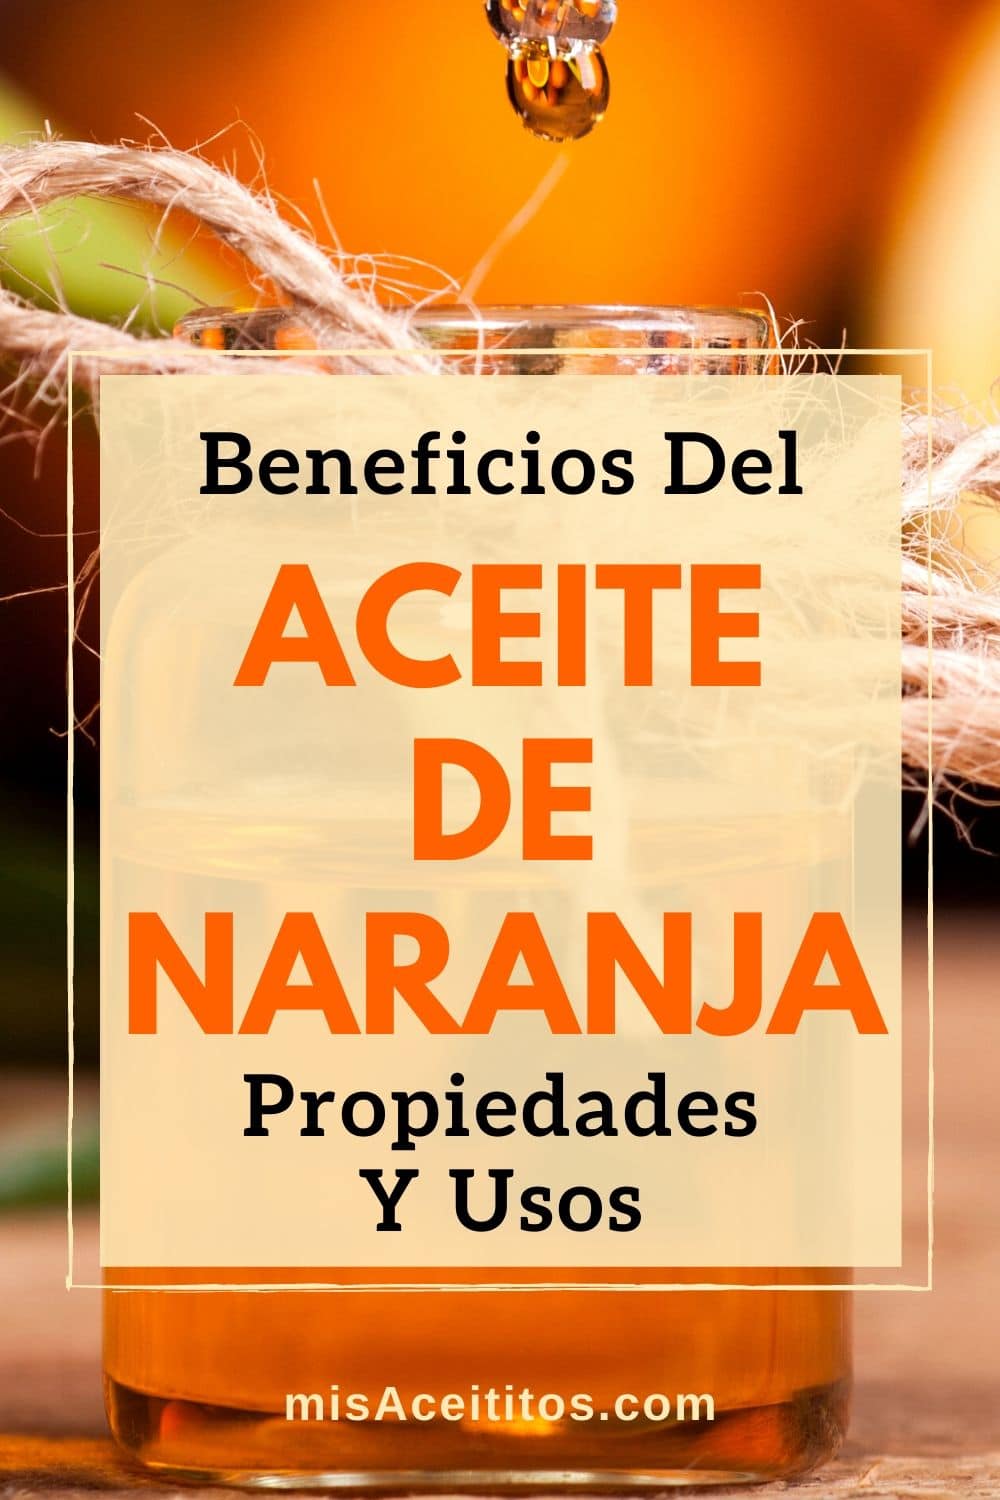 Aceite de Naranja Dulce: Propiedades, Beneficios y Usos para Mejorar tu Salud, Belleza y Hogar